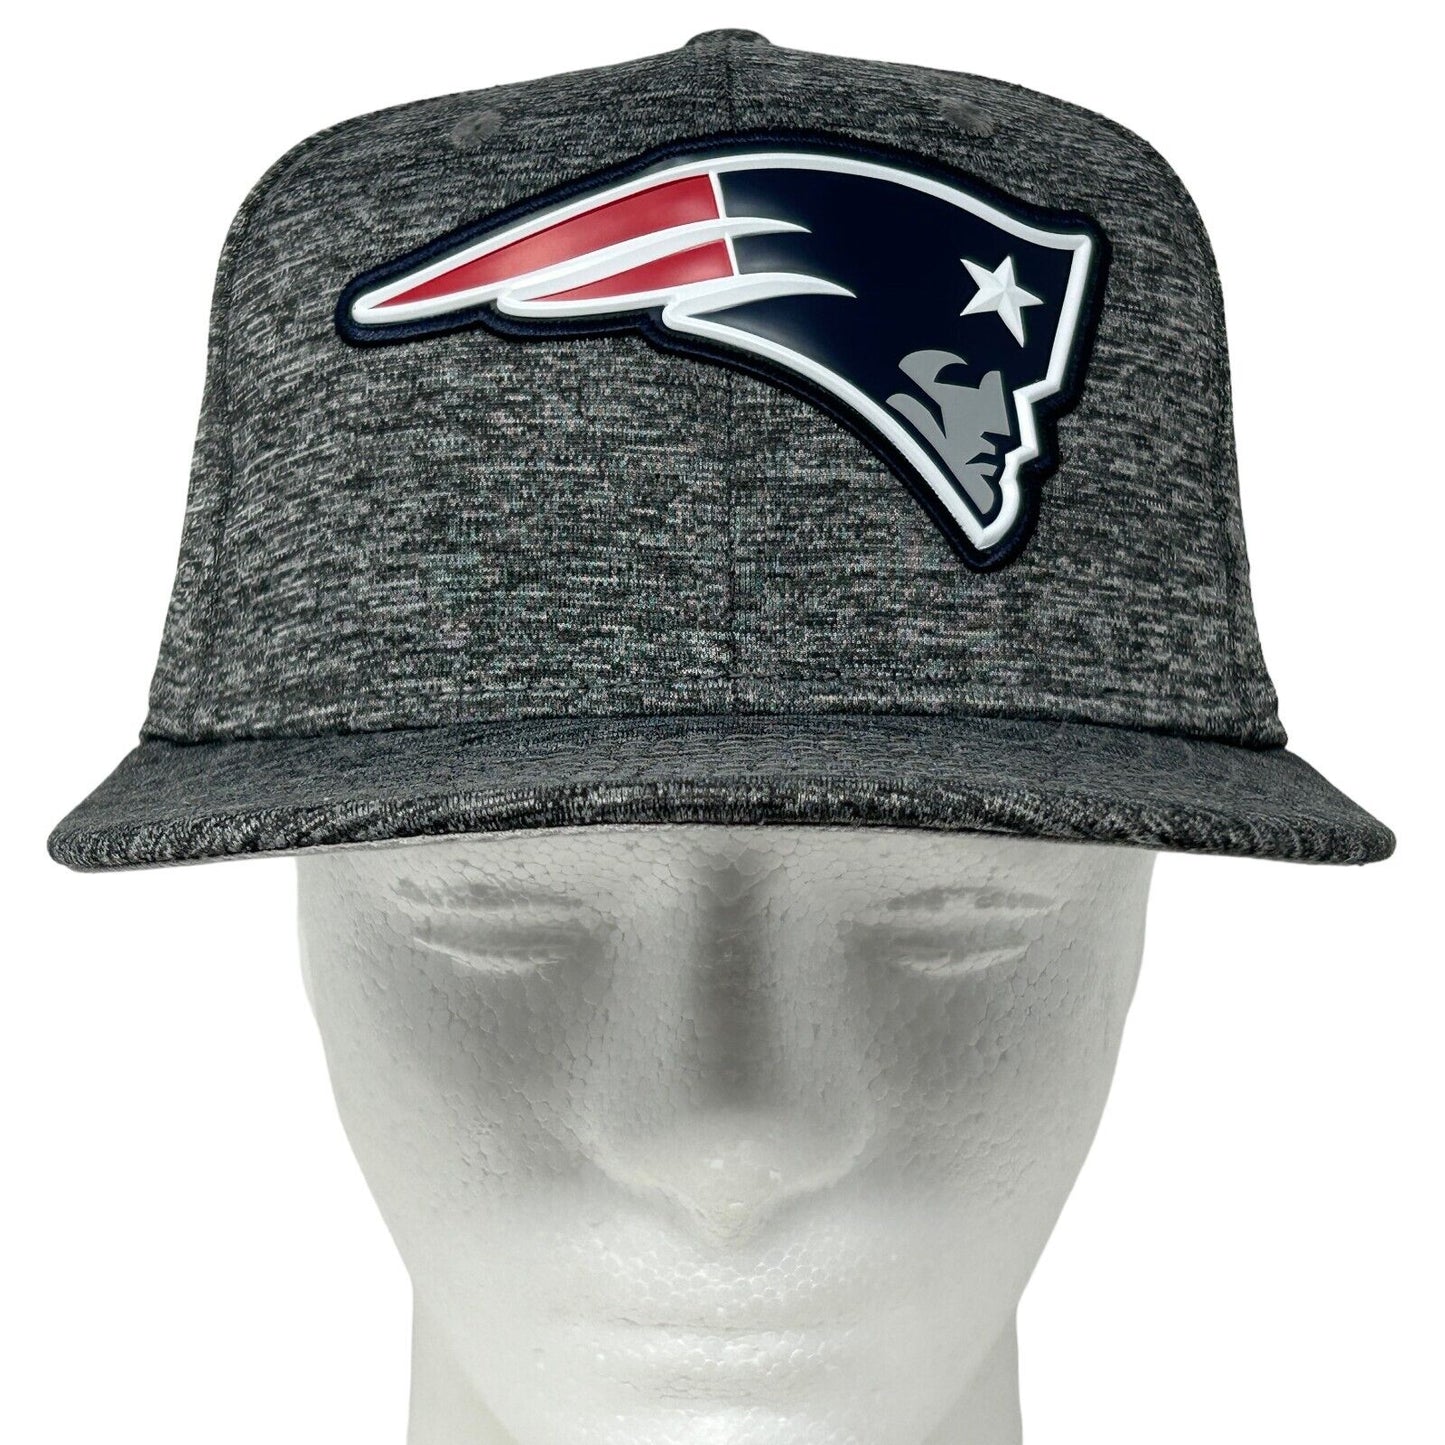 New England Patriots Hat Heathered Gray New Era NFL 9Fifty Snapback Baseball Cap